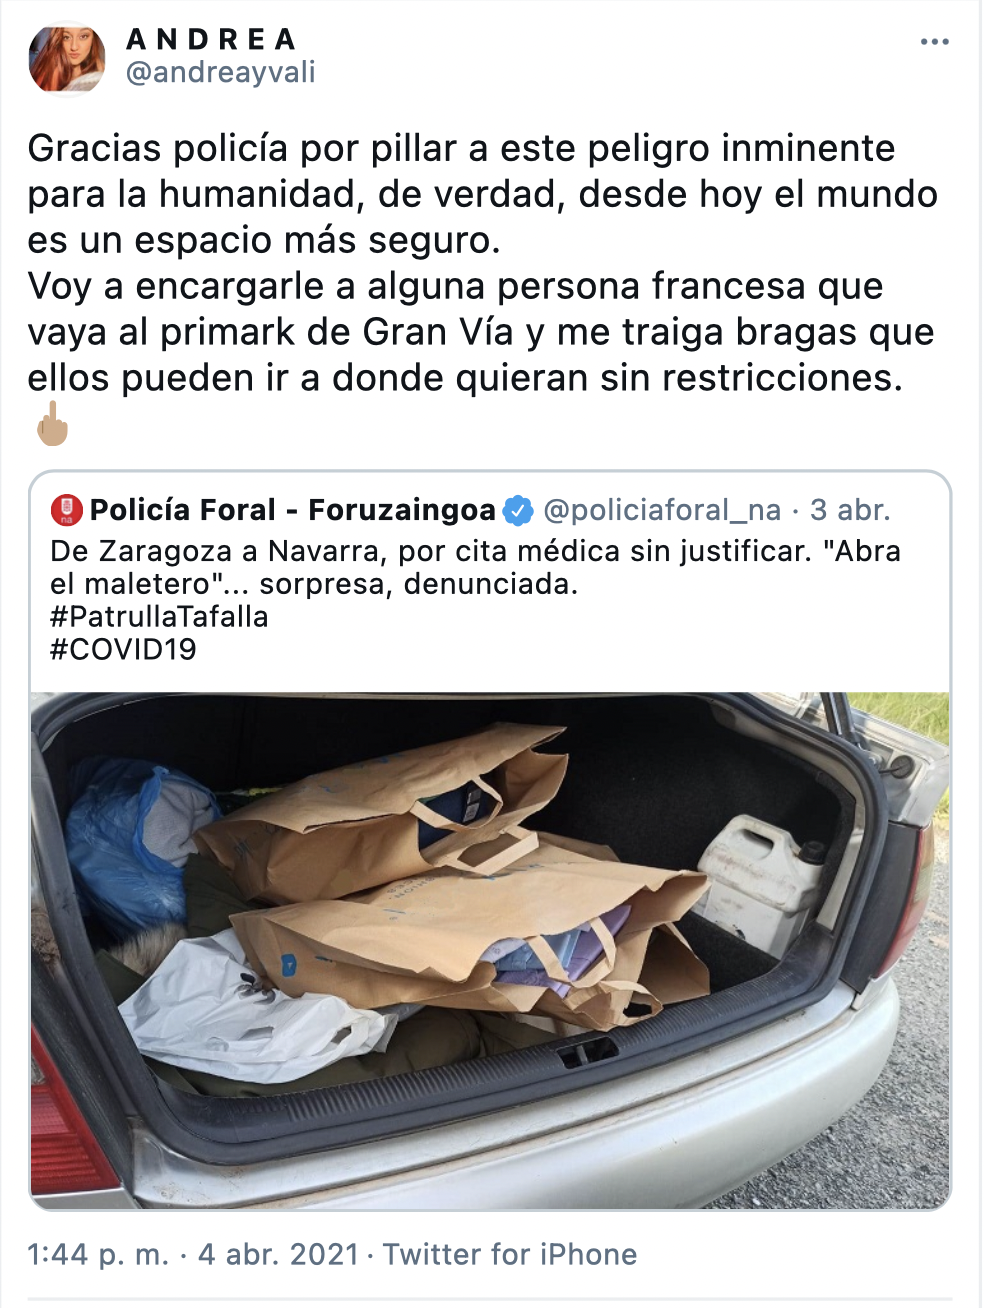 Tuit de una usuaria que critica a la policía su actuación haciendo alusión a los franceses que pueden viajar a España